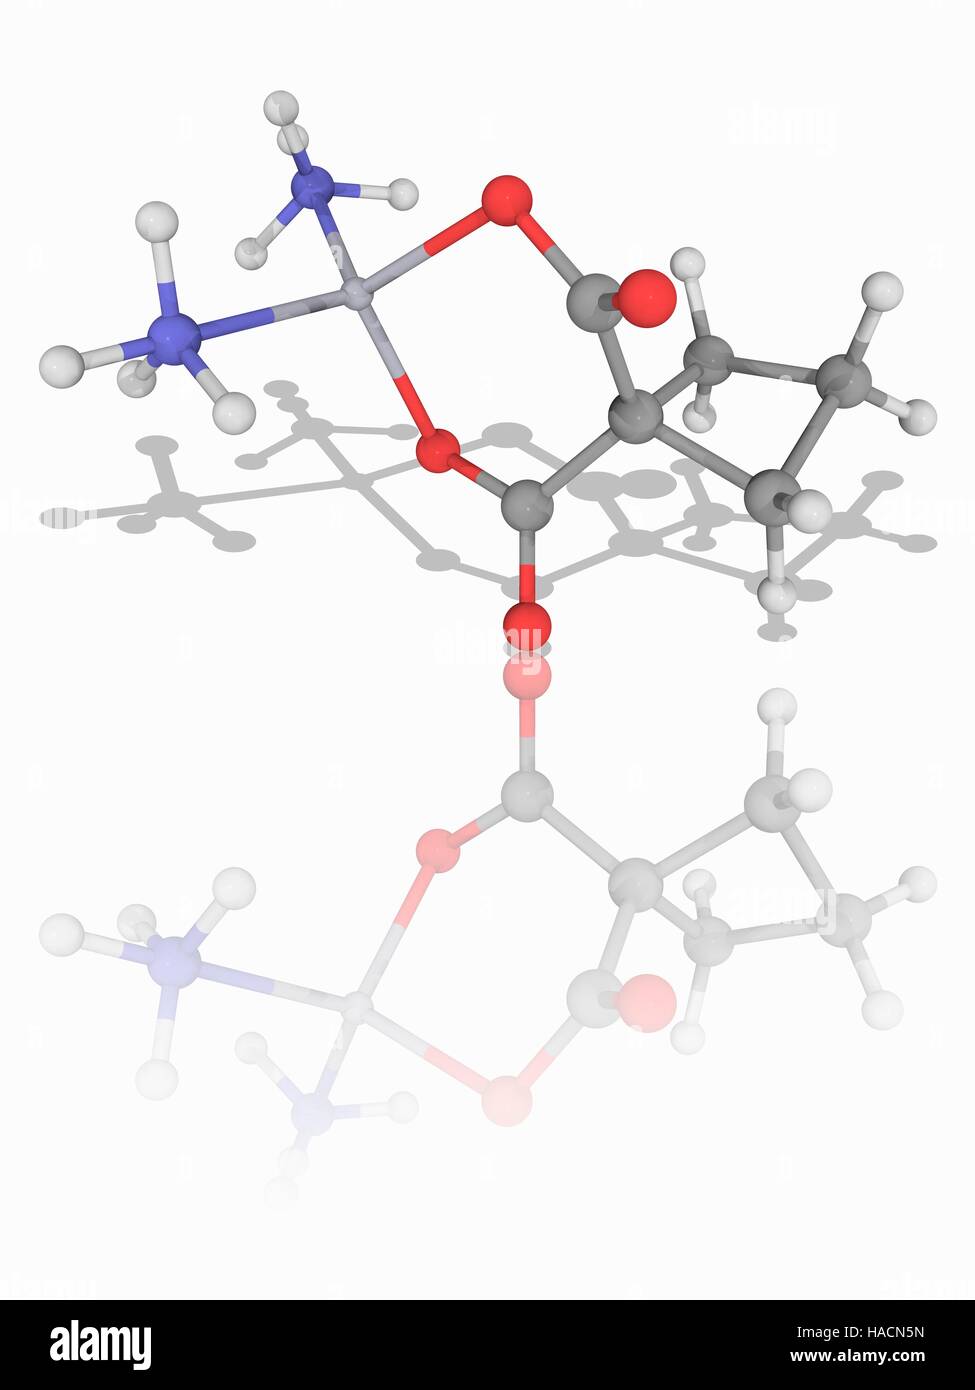 Carboplatin. Molekulares Modell des Krebs Medikament Carboplatin (C6. H12. N2. O4. (PT). Dieses Medikament ist zur Behandlung von Eierstockkrebs Karzinom, Lunge, Kopf und Hals. Es ist ein zytotoxische Medikament, denn es stört die DNA (Desoxyribonukleinsäure) genetisches Material in Krebszellen Zelltod verursachen. Atome als Kugeln dargestellt werden und sind farblich gekennzeichnet: Kohlenstoff (grau), Wasserstoff (weiß), Stickstoff (blau), Sauerstoff (rot) und Platin (grau, oben links) Abbildung. Stockfoto